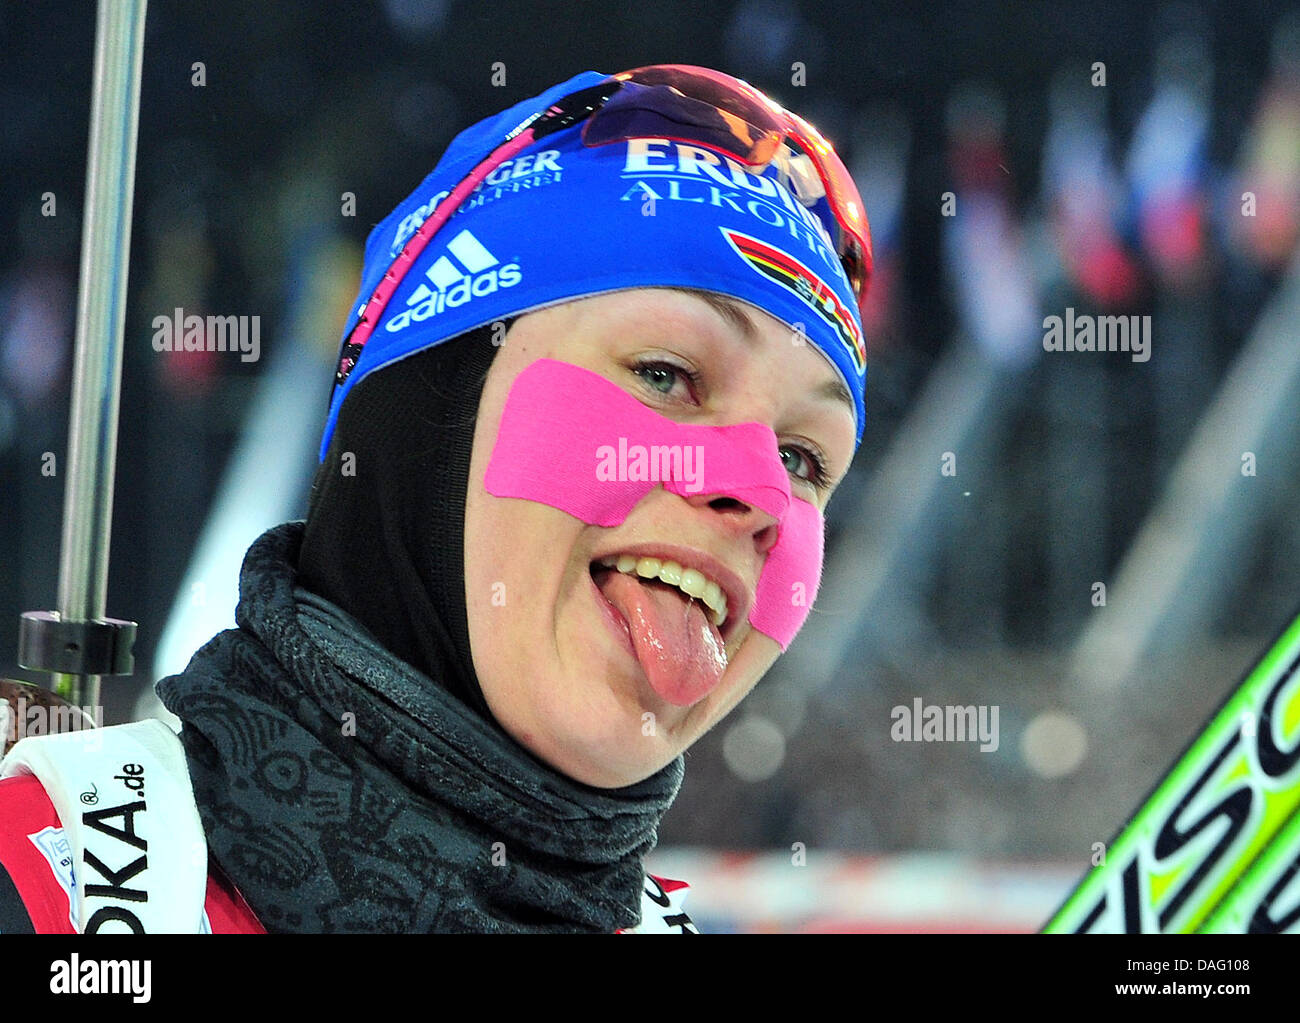 Magdalena Neuner Deutschland reagiert nach der 15 km-Einzel bei den Biathlon-Weltmeisterschaften in Chanty-Mansijsk, Russland, 9. März 2011. Foto: Martin Schutt Stockfoto